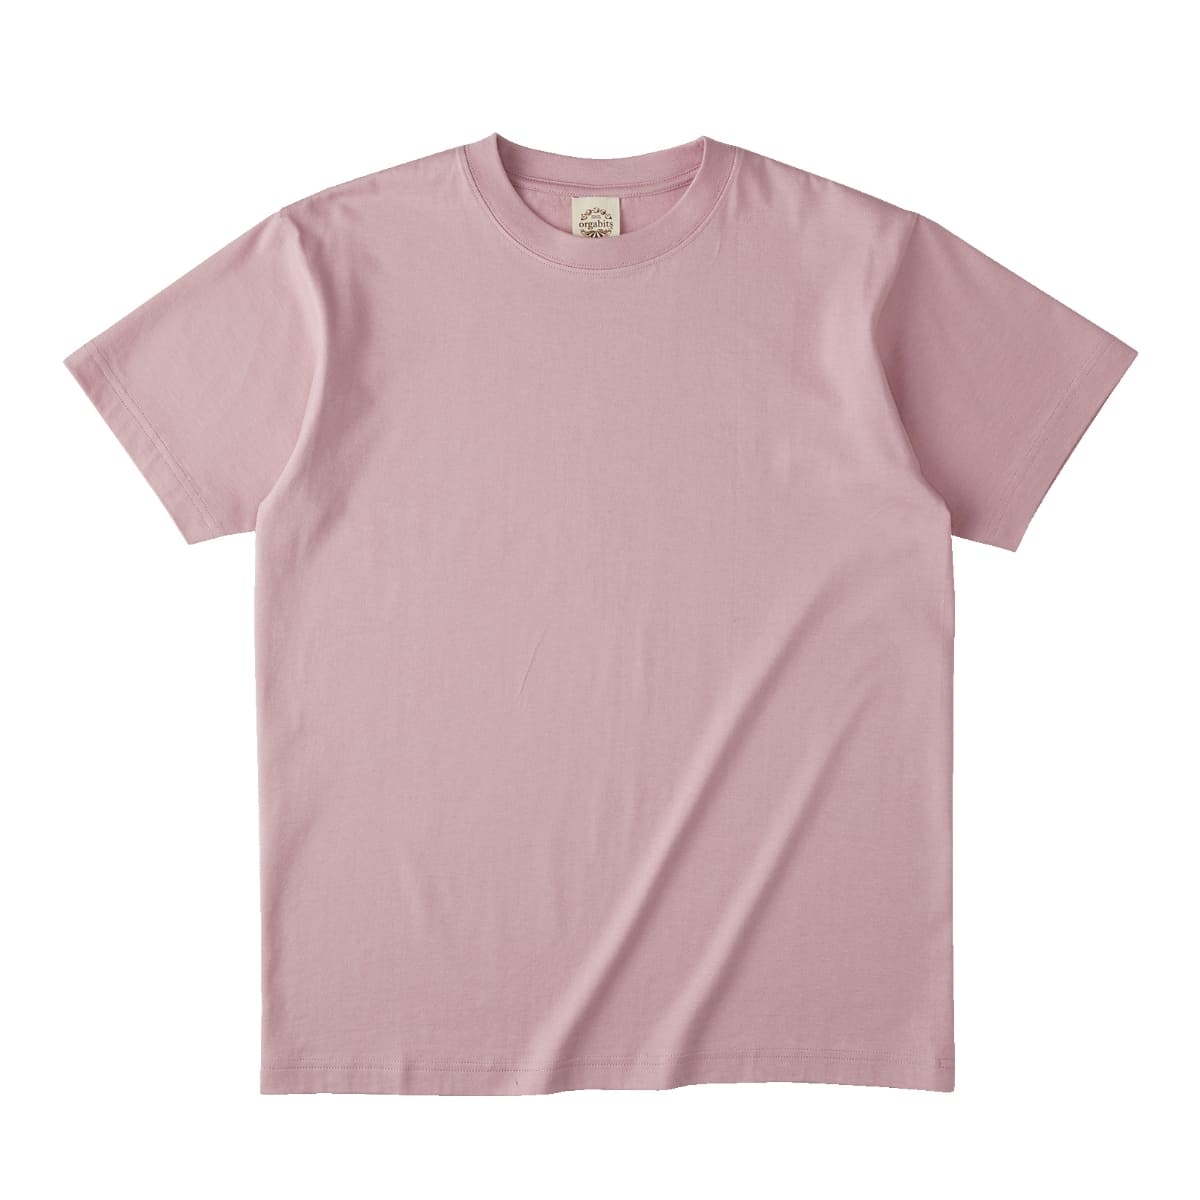 オーガニックコットンTシャツ | メンズ | 1枚 | OGB-910 | ホワイト